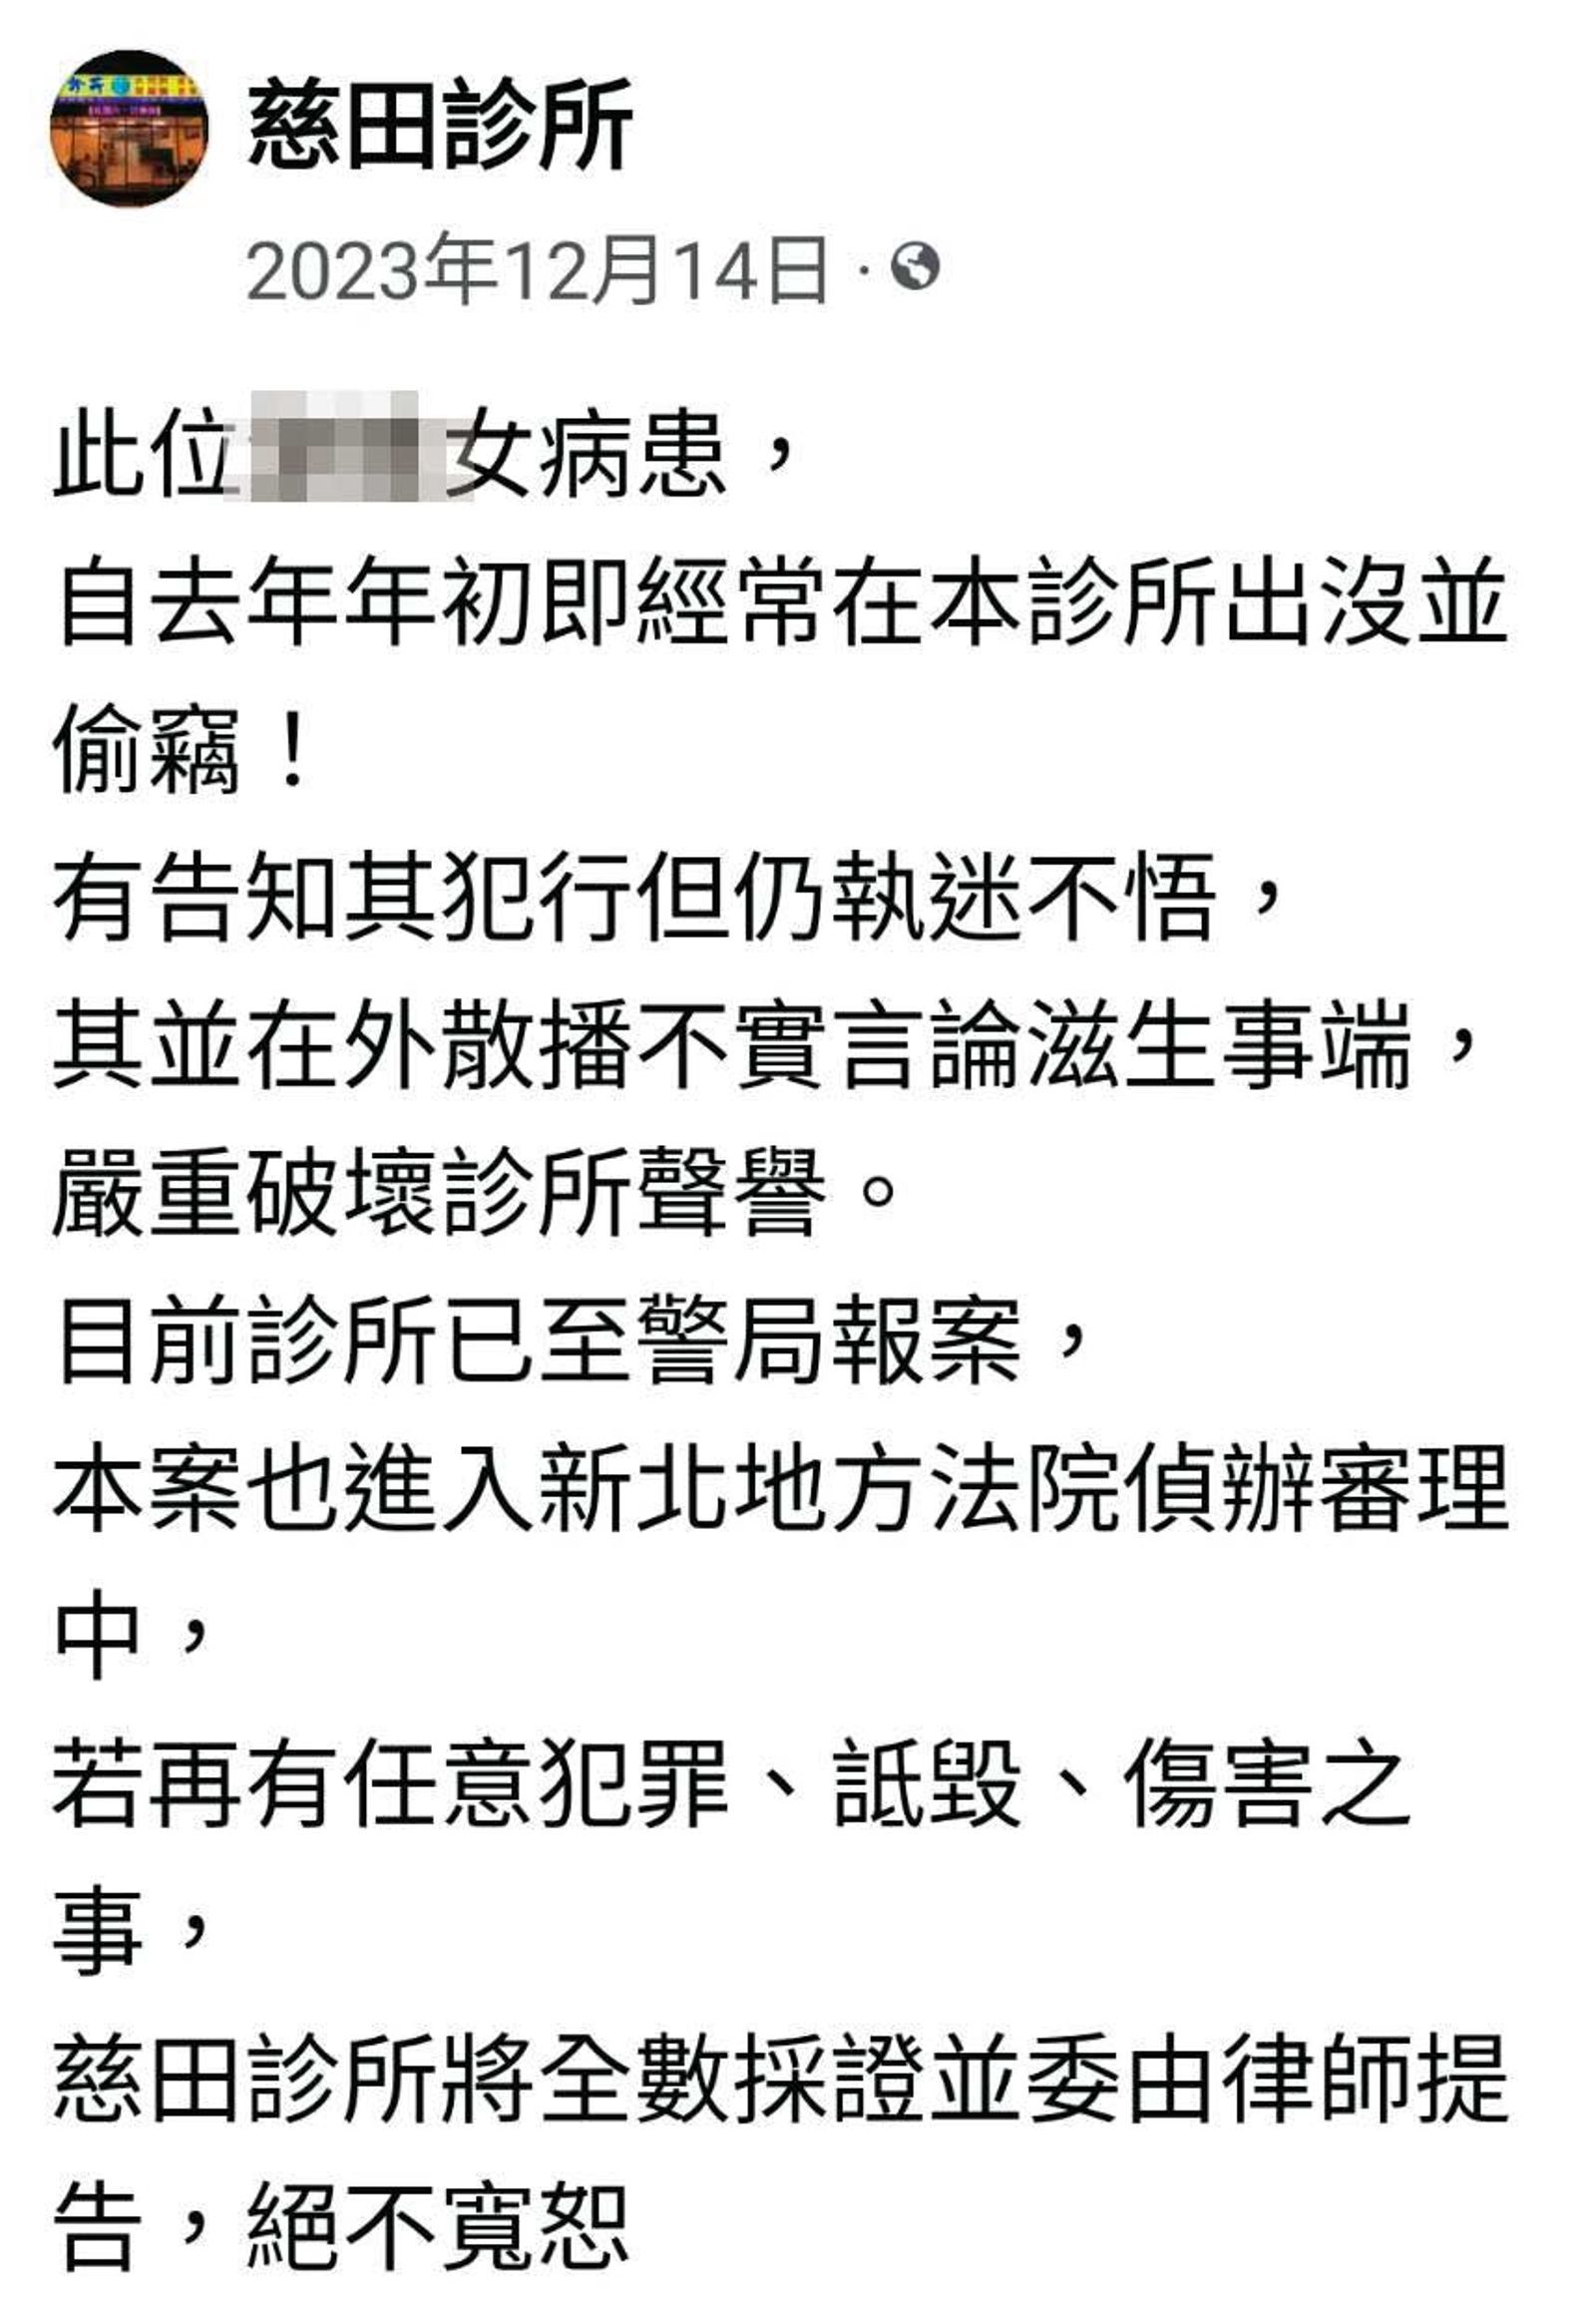 沈能俊在診所臉書PO出監視畫面，指控H小姐偷竊診所物品